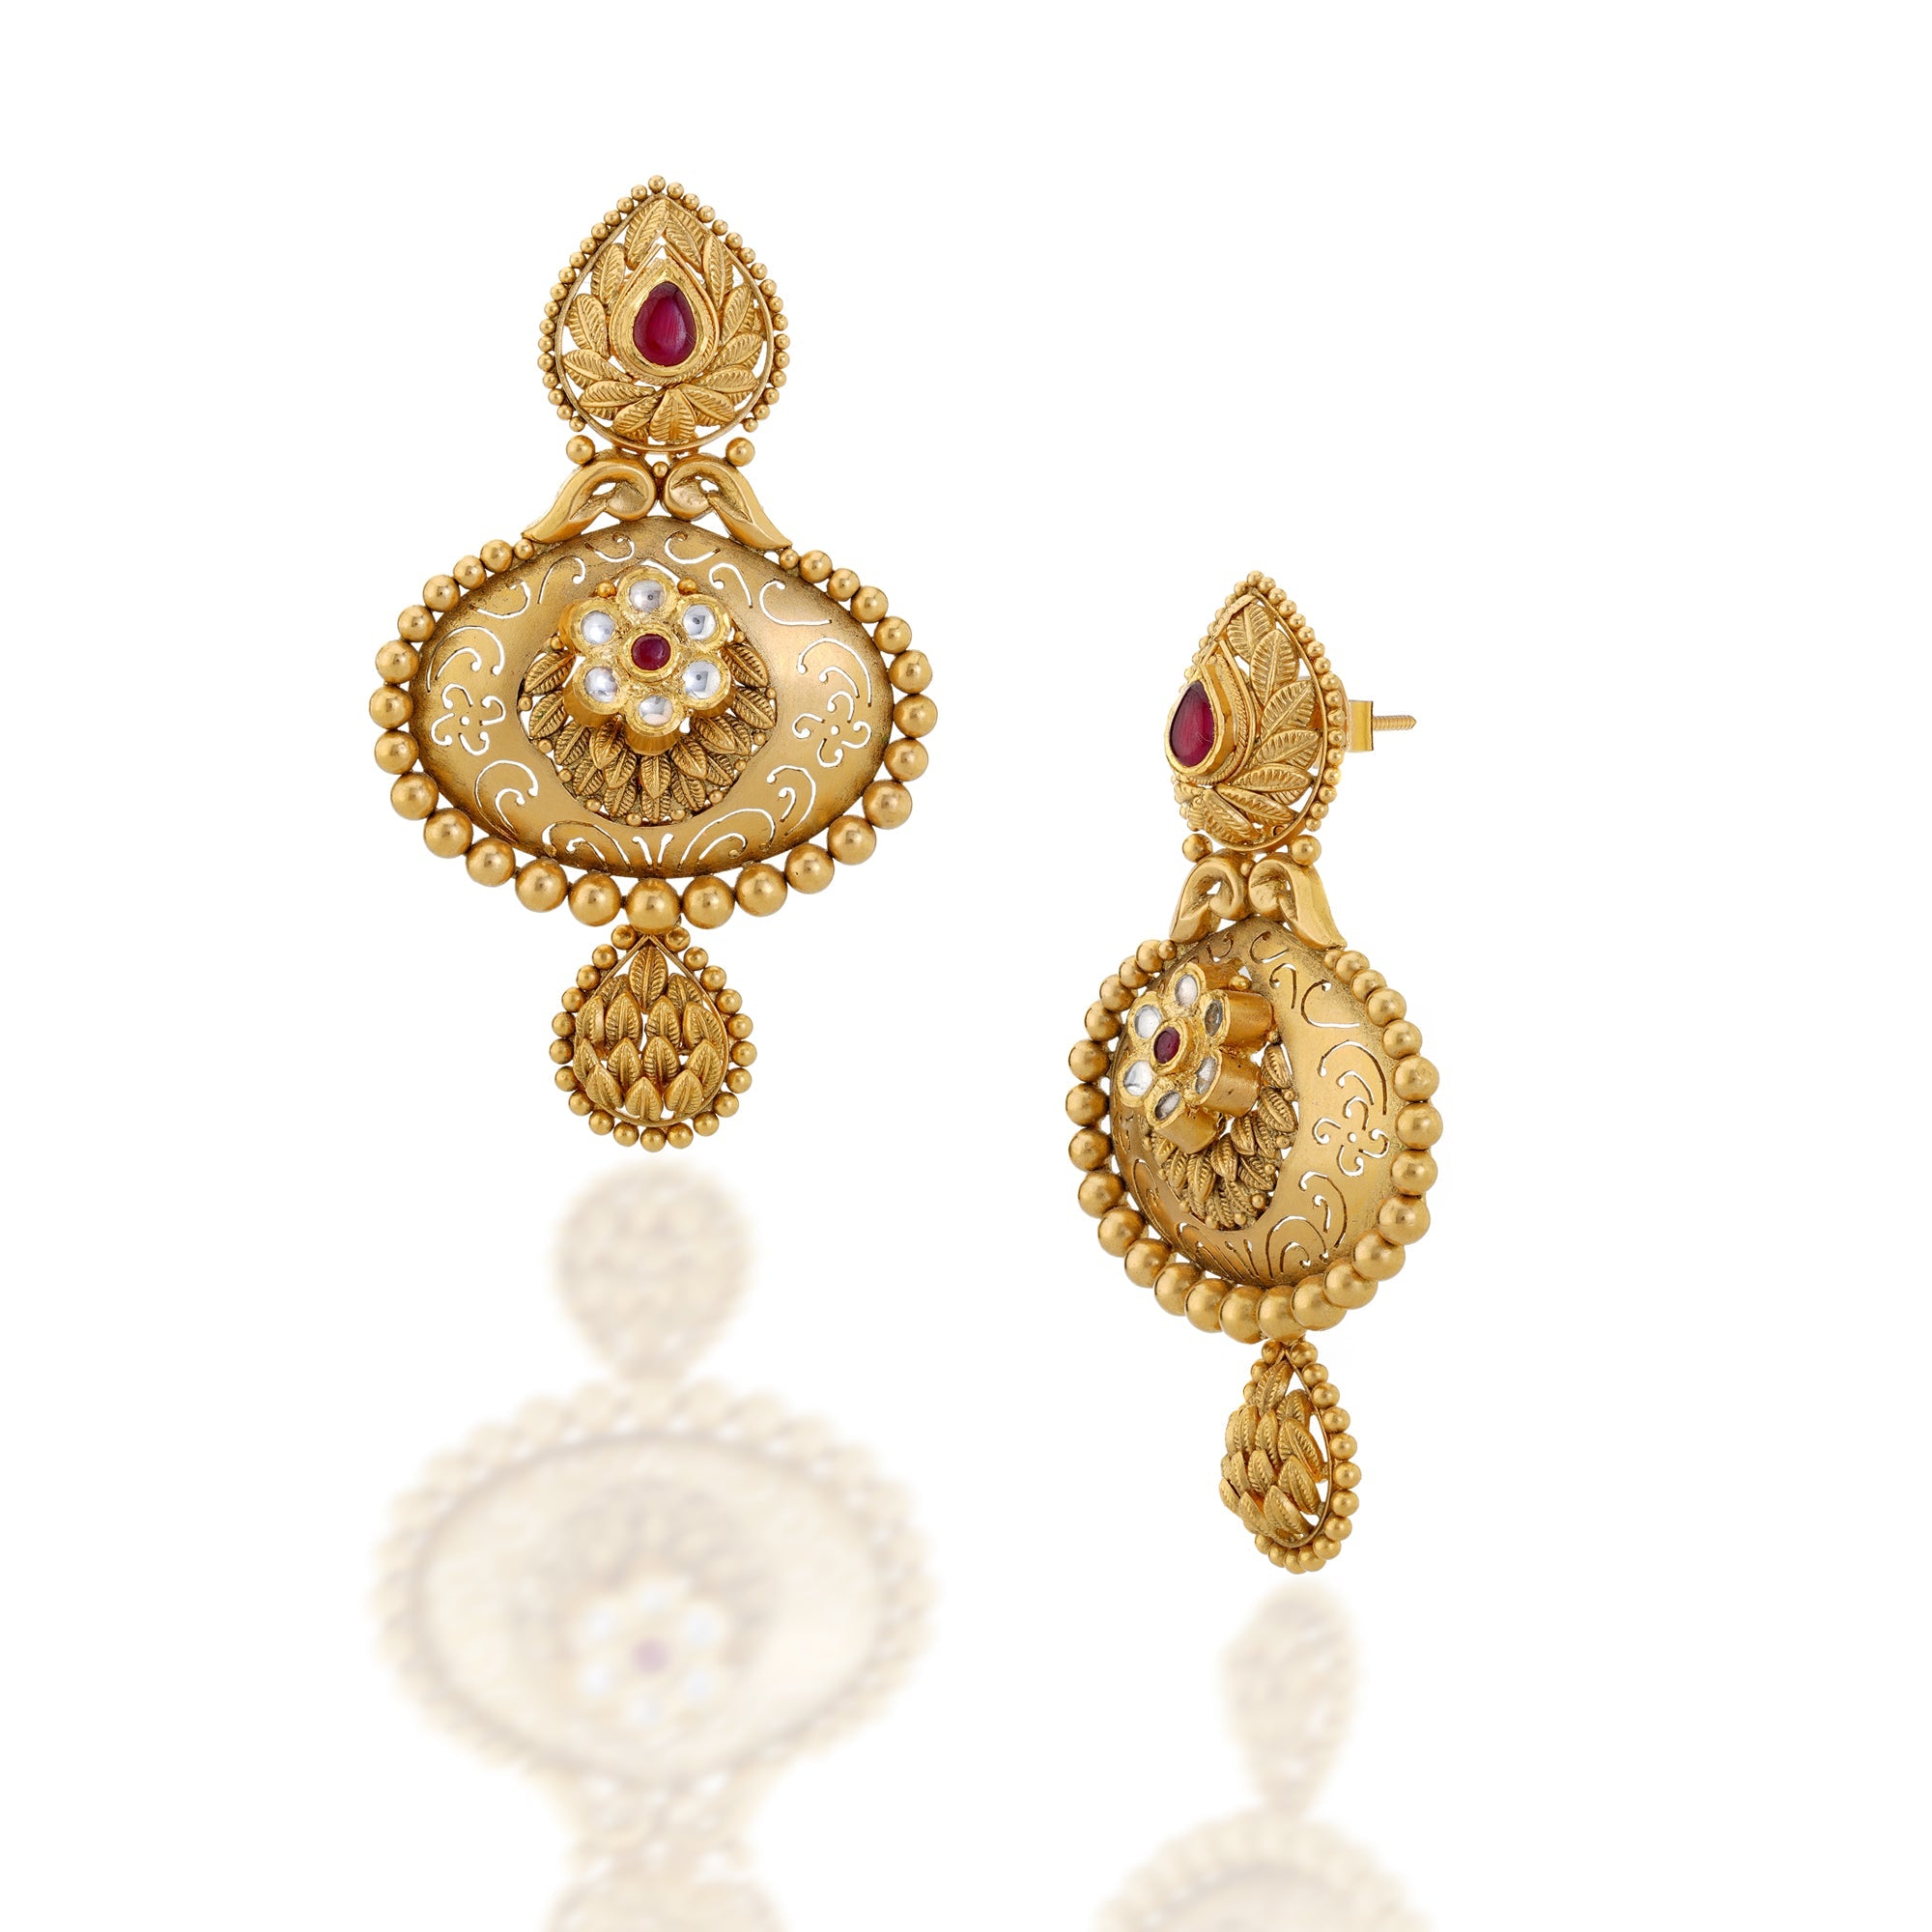 Indu Gold Earrings